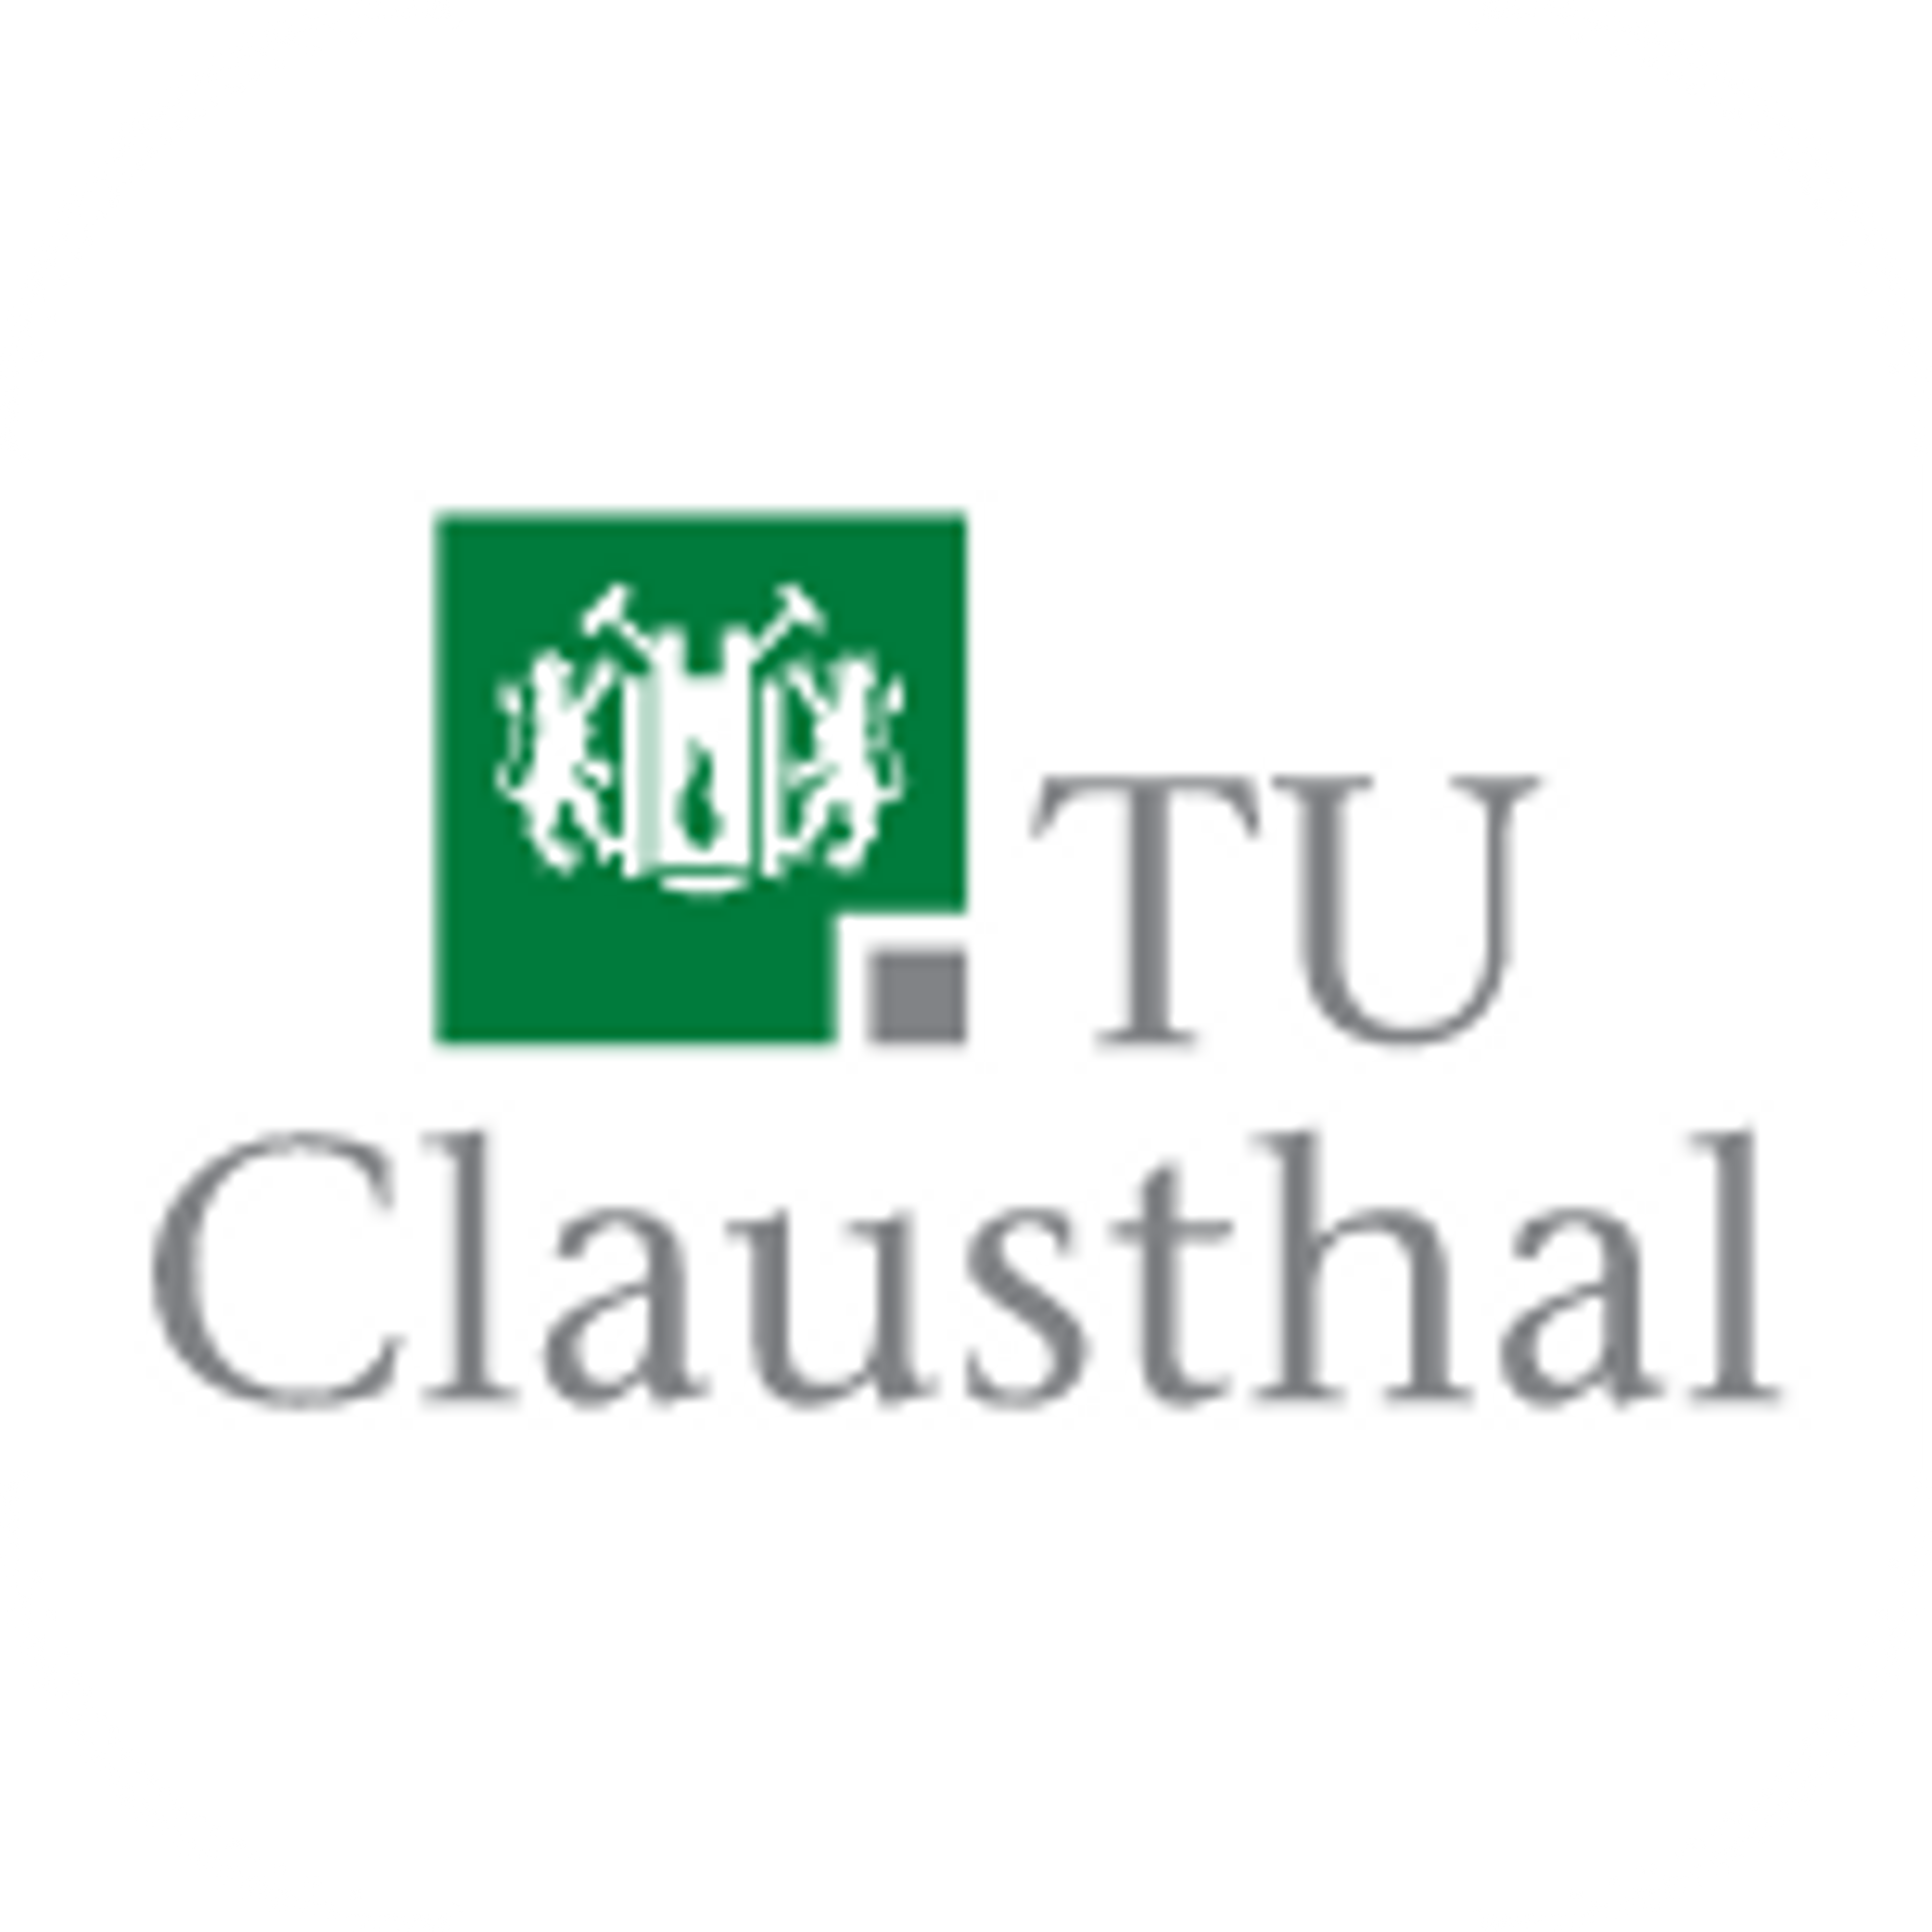 TU Clausthal